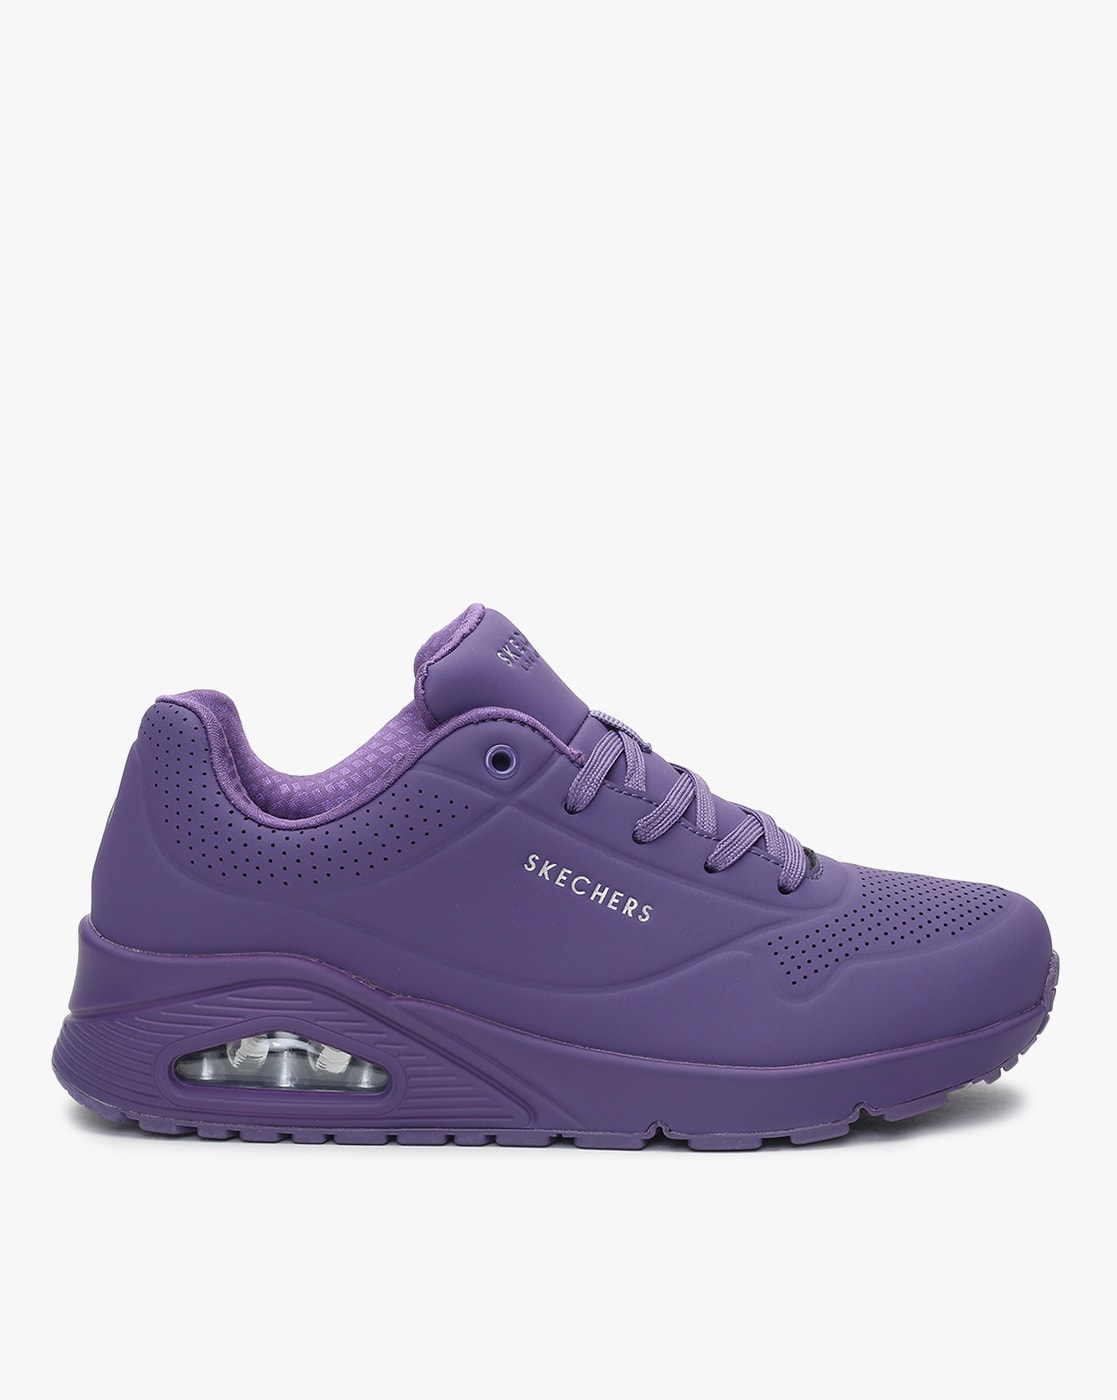 skechers women's shoes purple